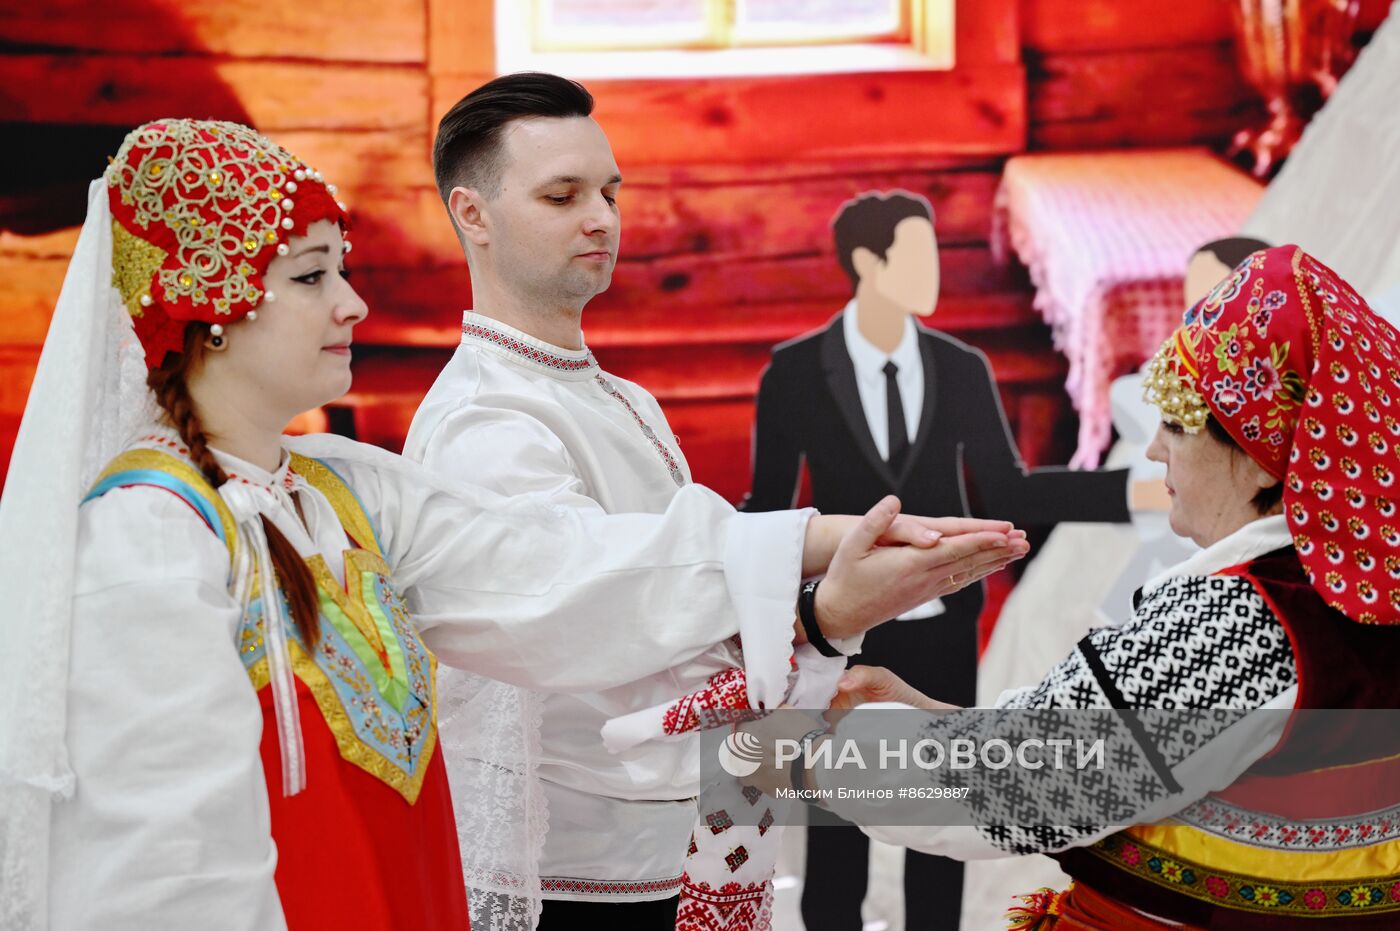 Выставка "Россия". Театральный коллектив представил свадьбу в традициях Белгородской области